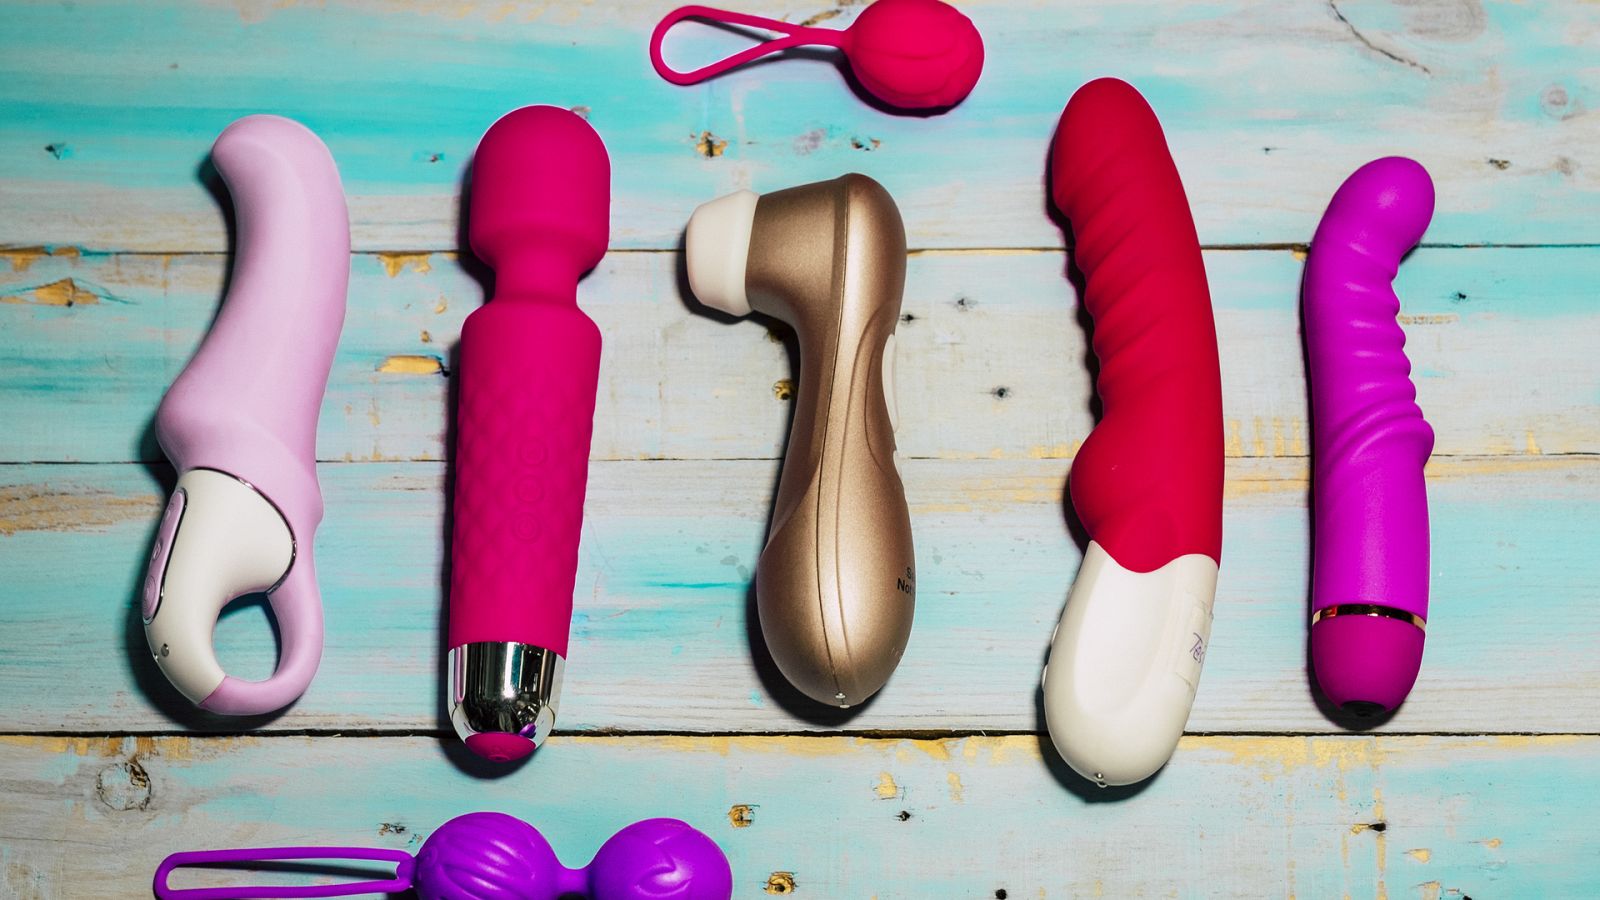 Estos son los juguetes eróticos para adultos más vendidos y mejor